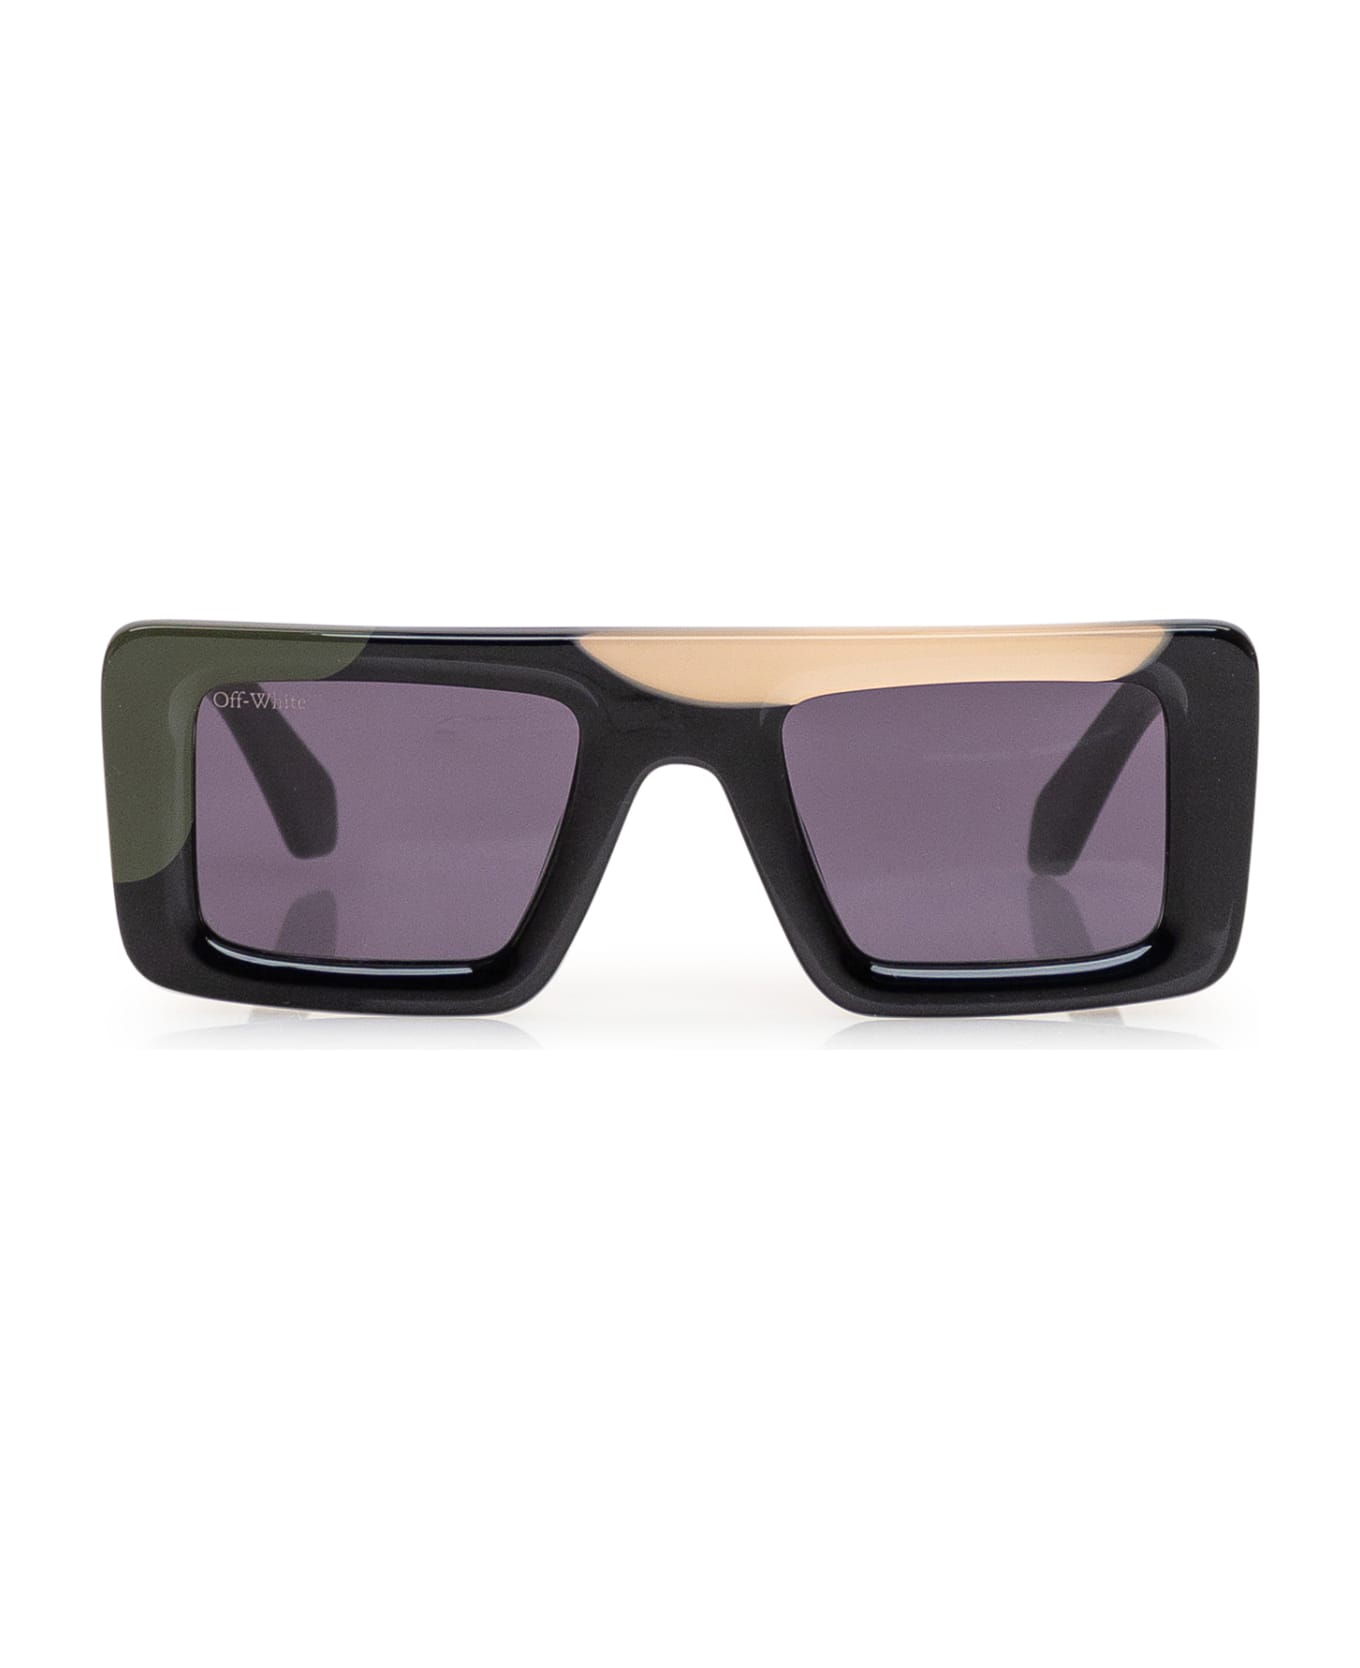 Off-White Seattle Sunglasses - 1207 MULTICOLOR BLACK DARK